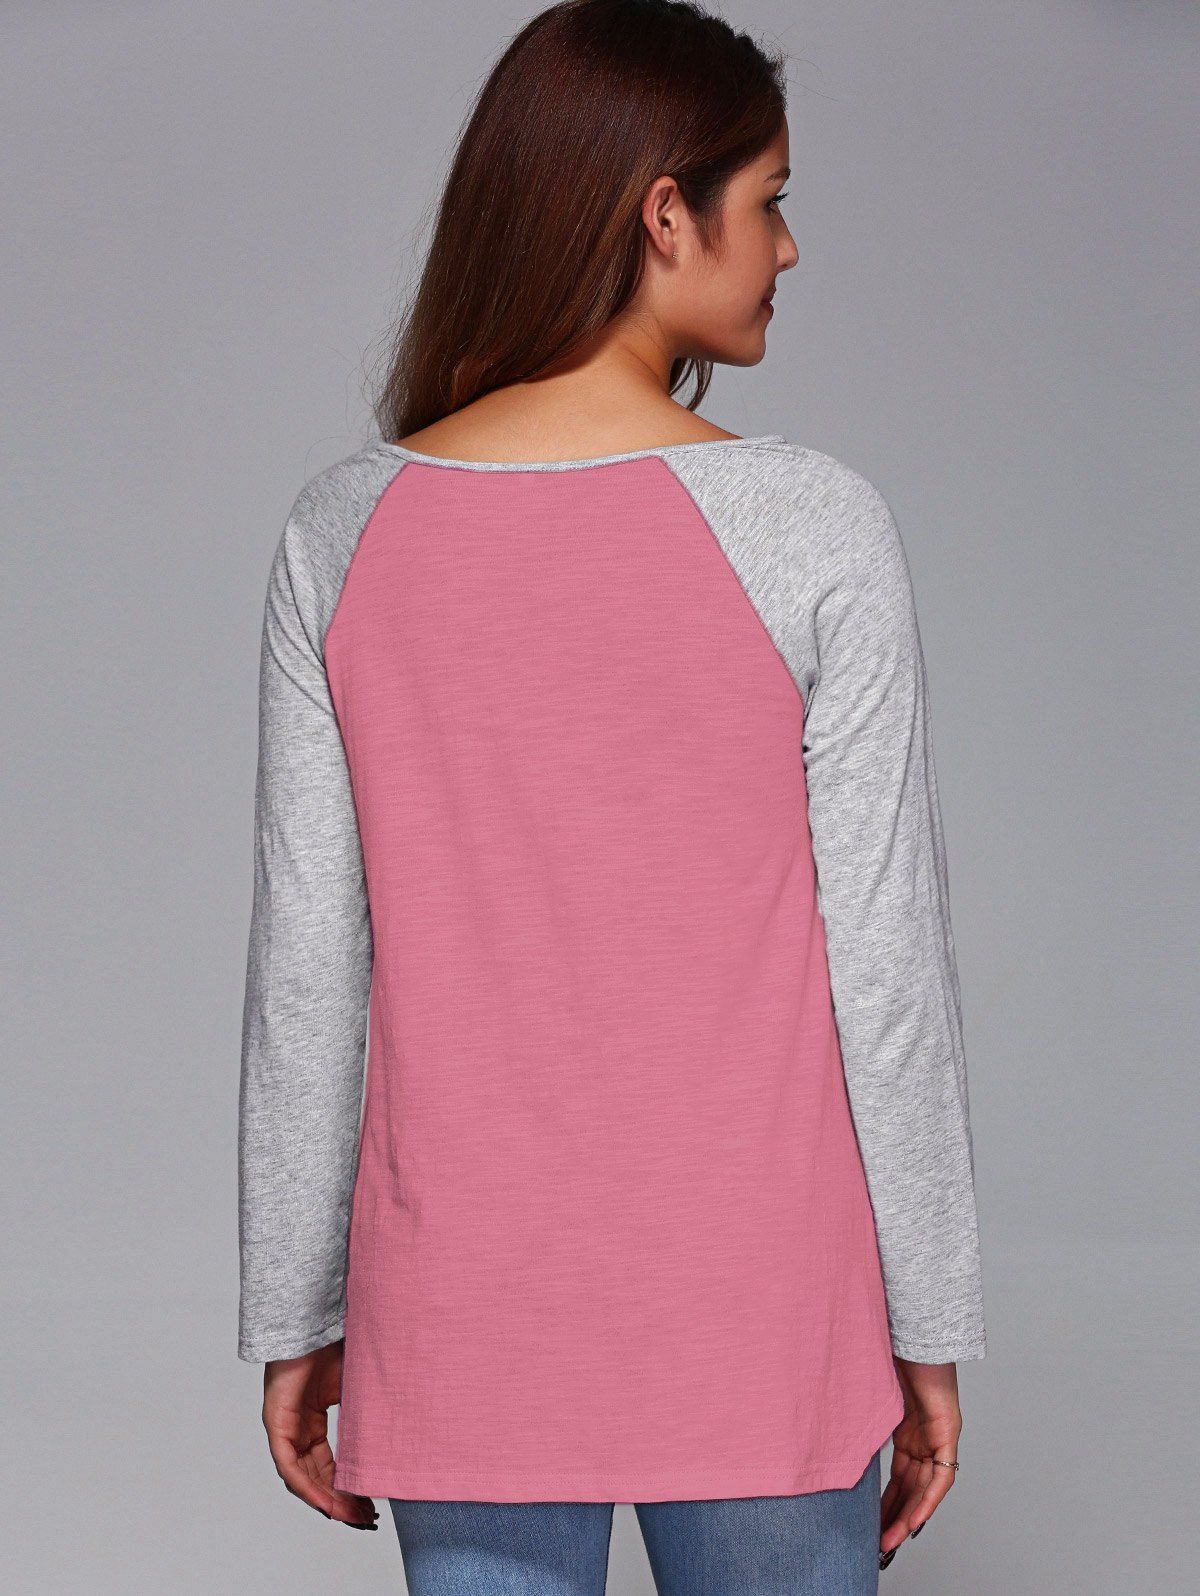 2018 Raglan Sleeve Asymmetrical T Shirt Pink L In Long Sleeves Online Store Best Suede Skirt 